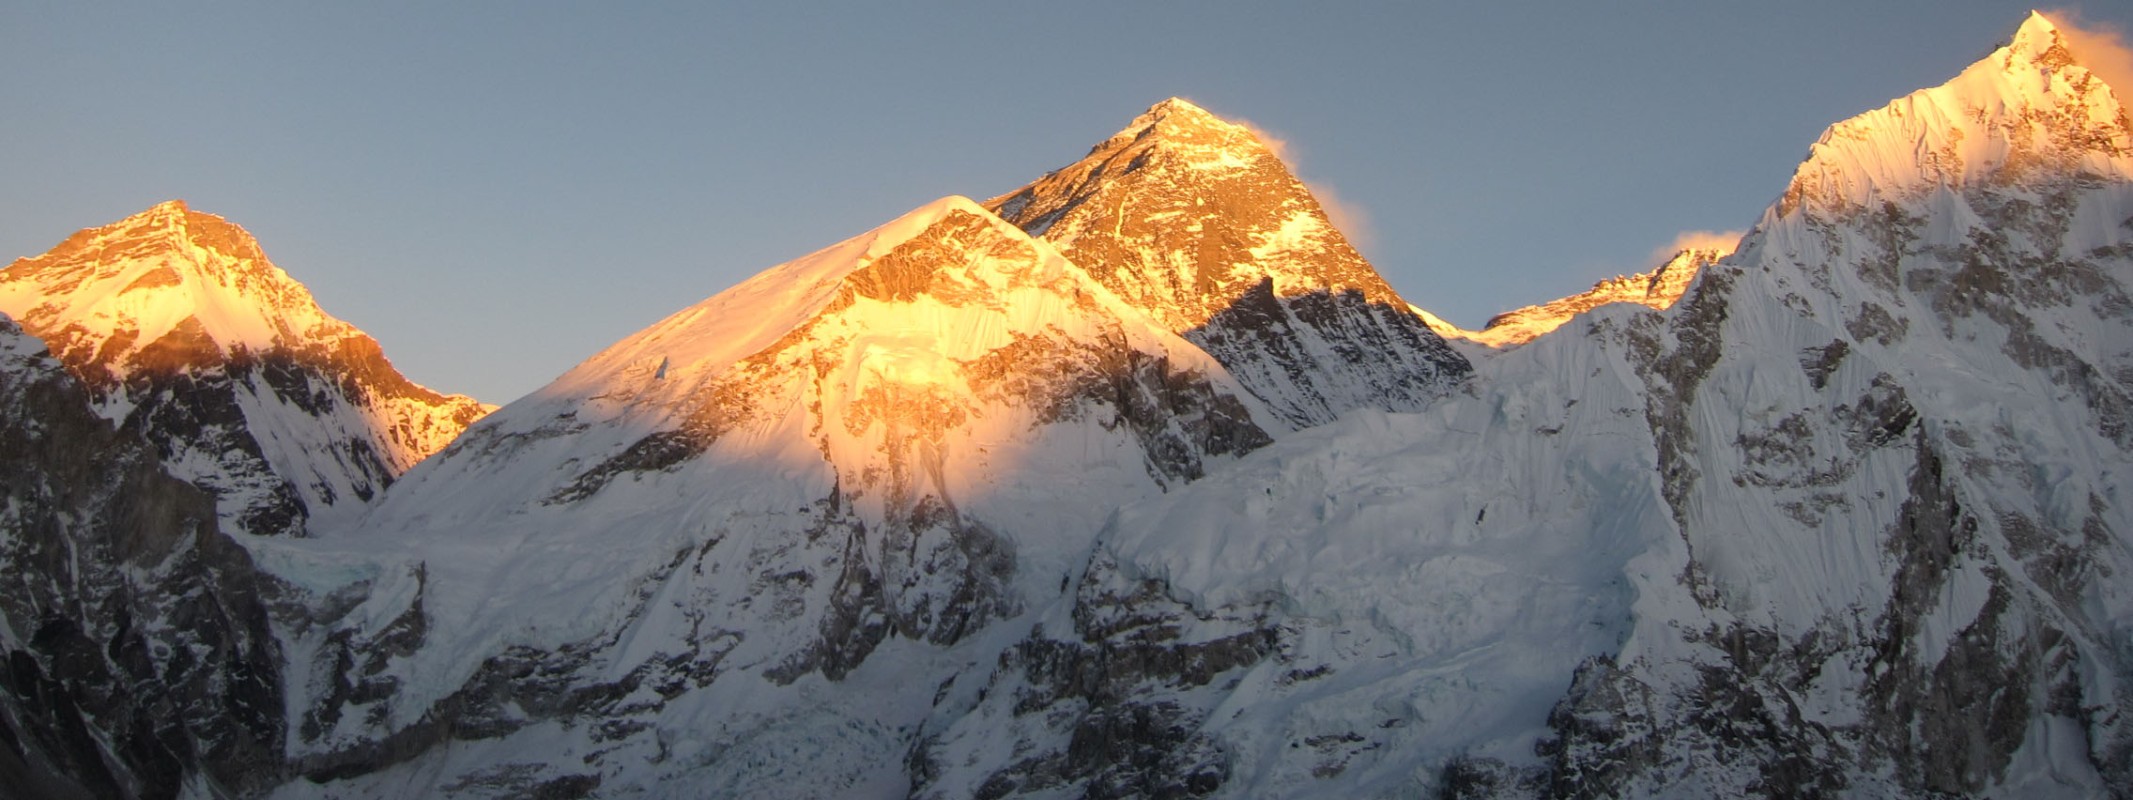 Everest Region Trek